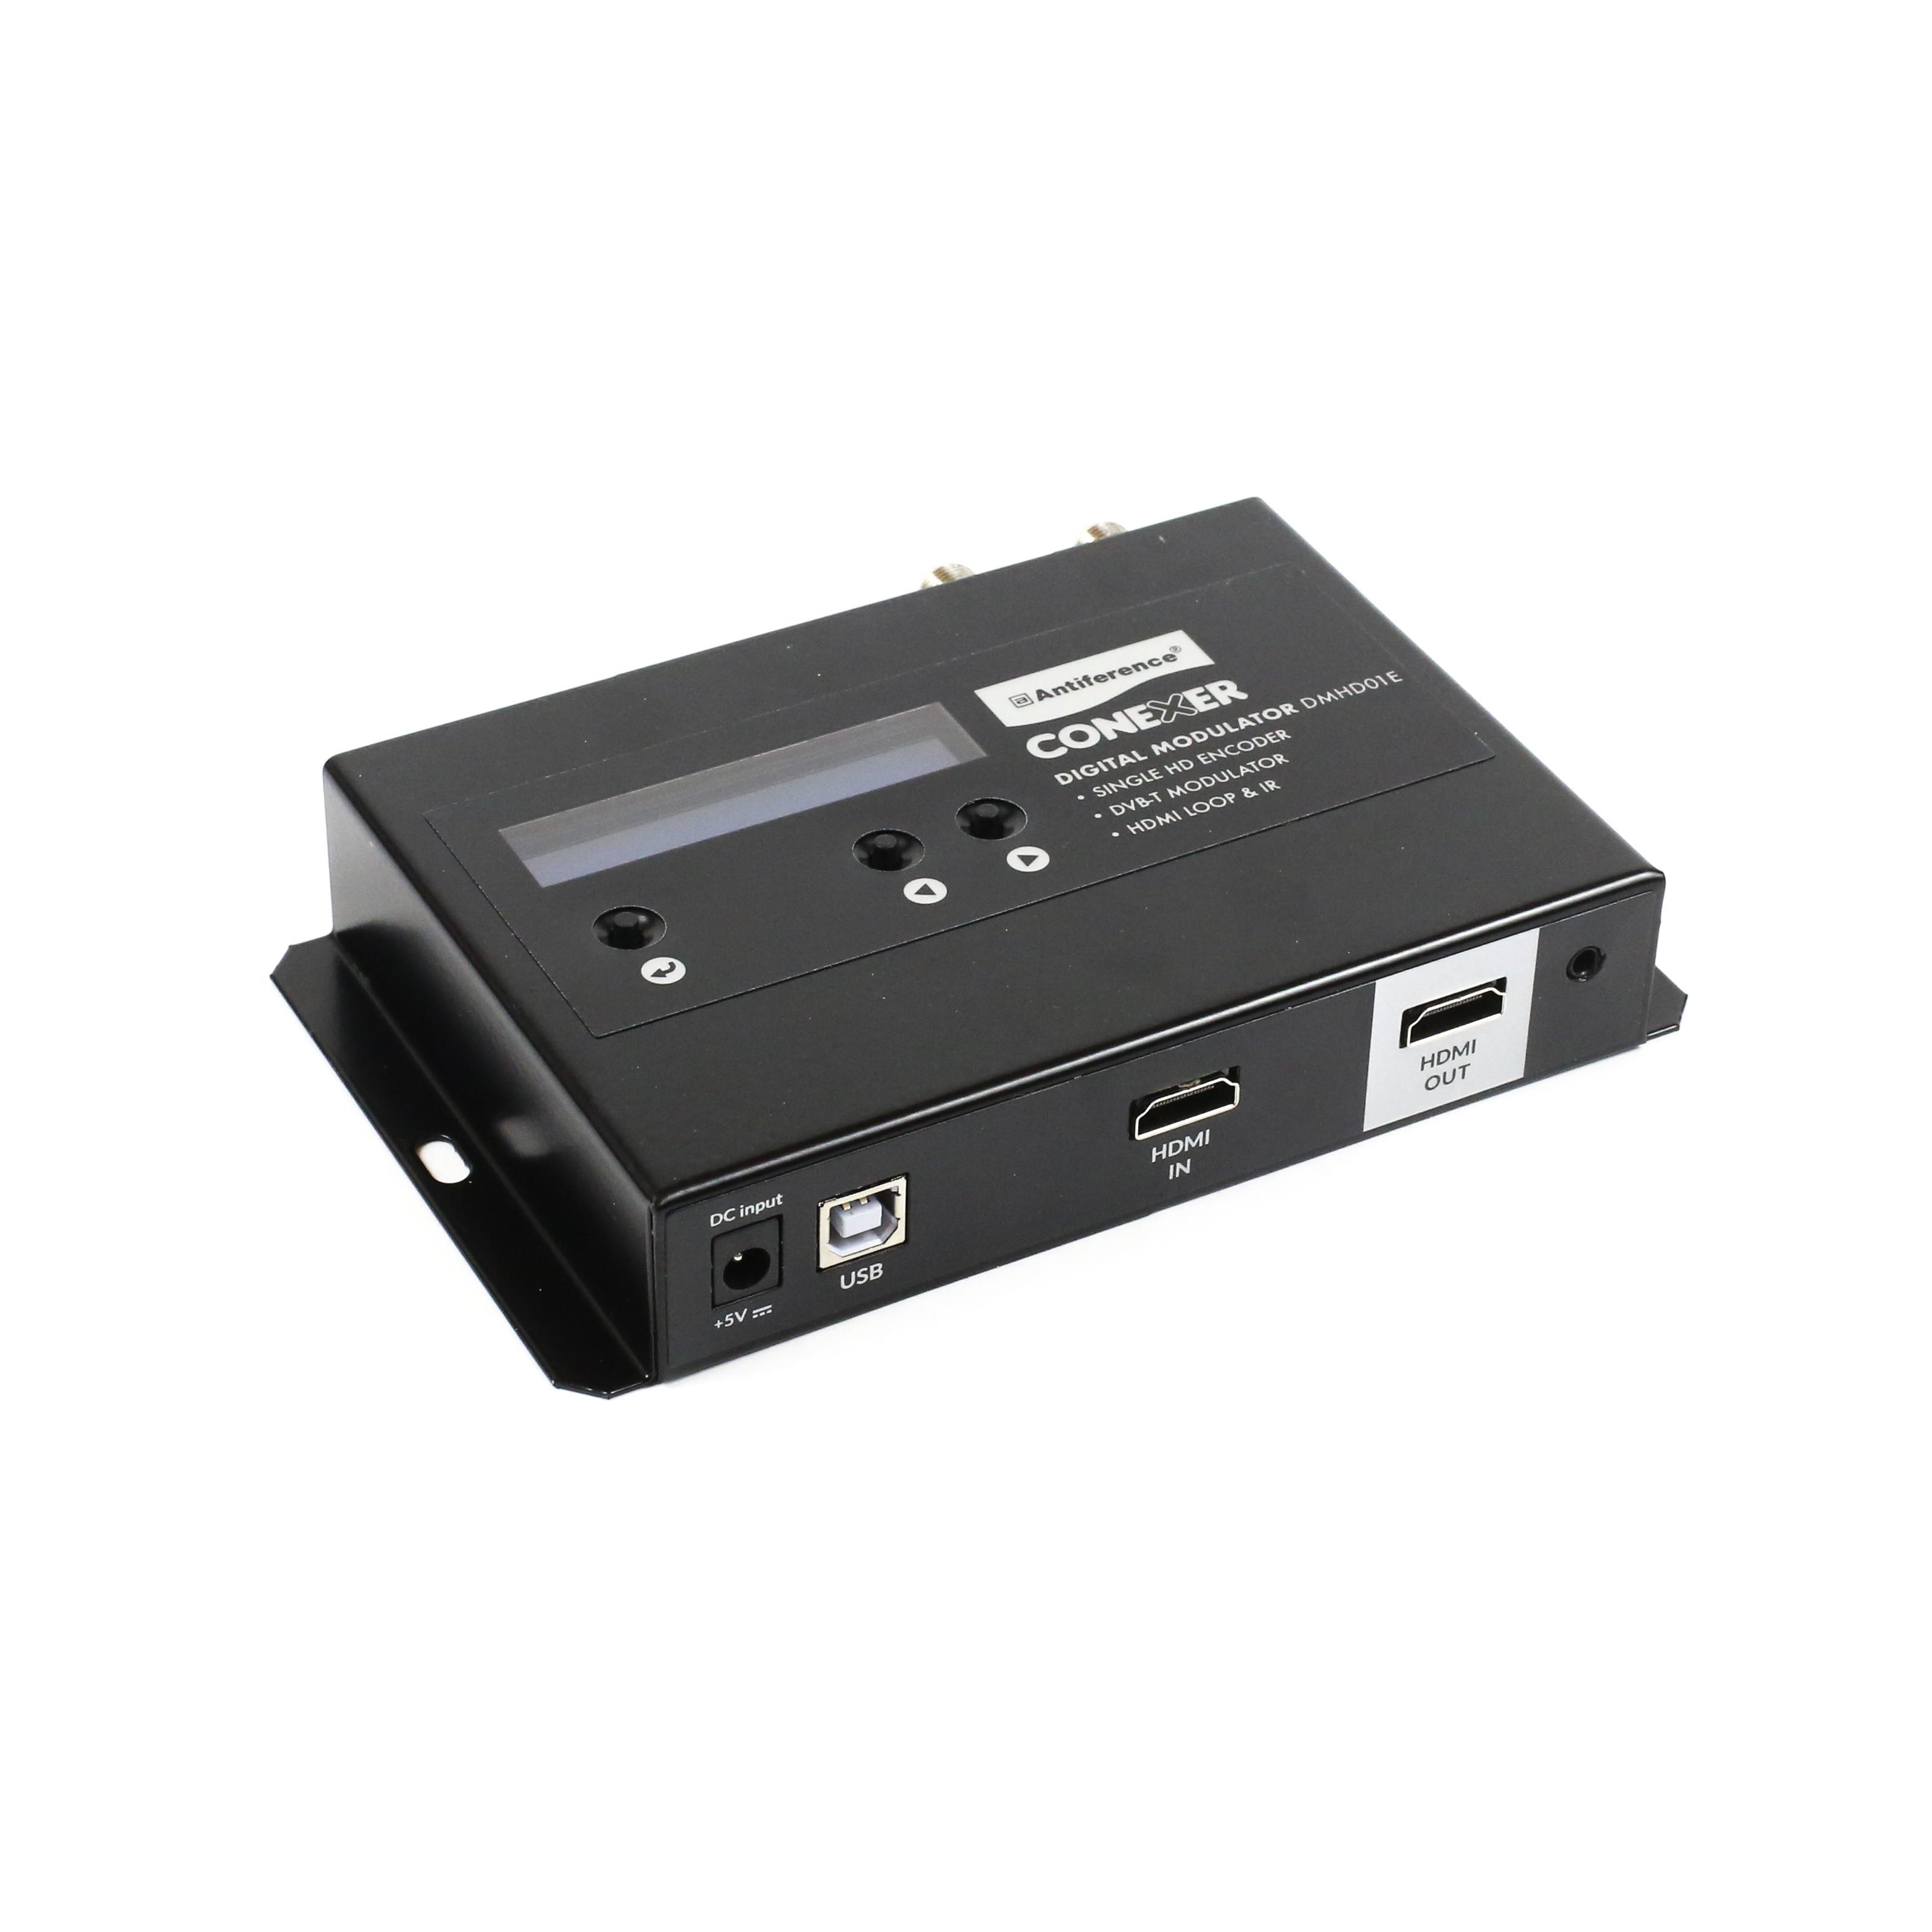 DMHD01E - Conexer Single HDMI Modulator